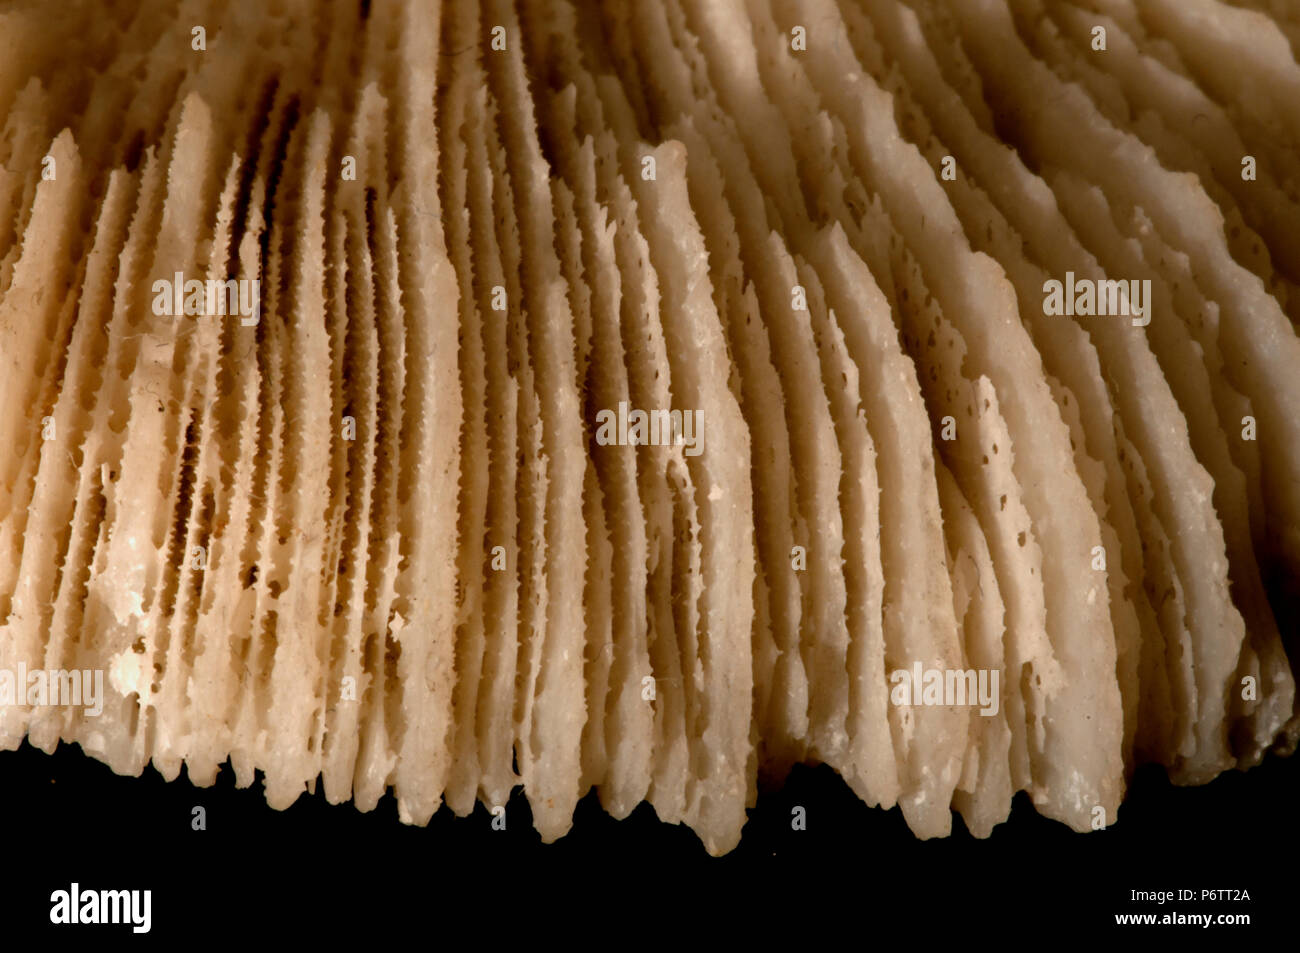 Disque pédale - Détail de la cloison calcifiée (parois radiales). Classe des Anthozoaires, embranchement des cnidaires, Anemone, Banque D'Images